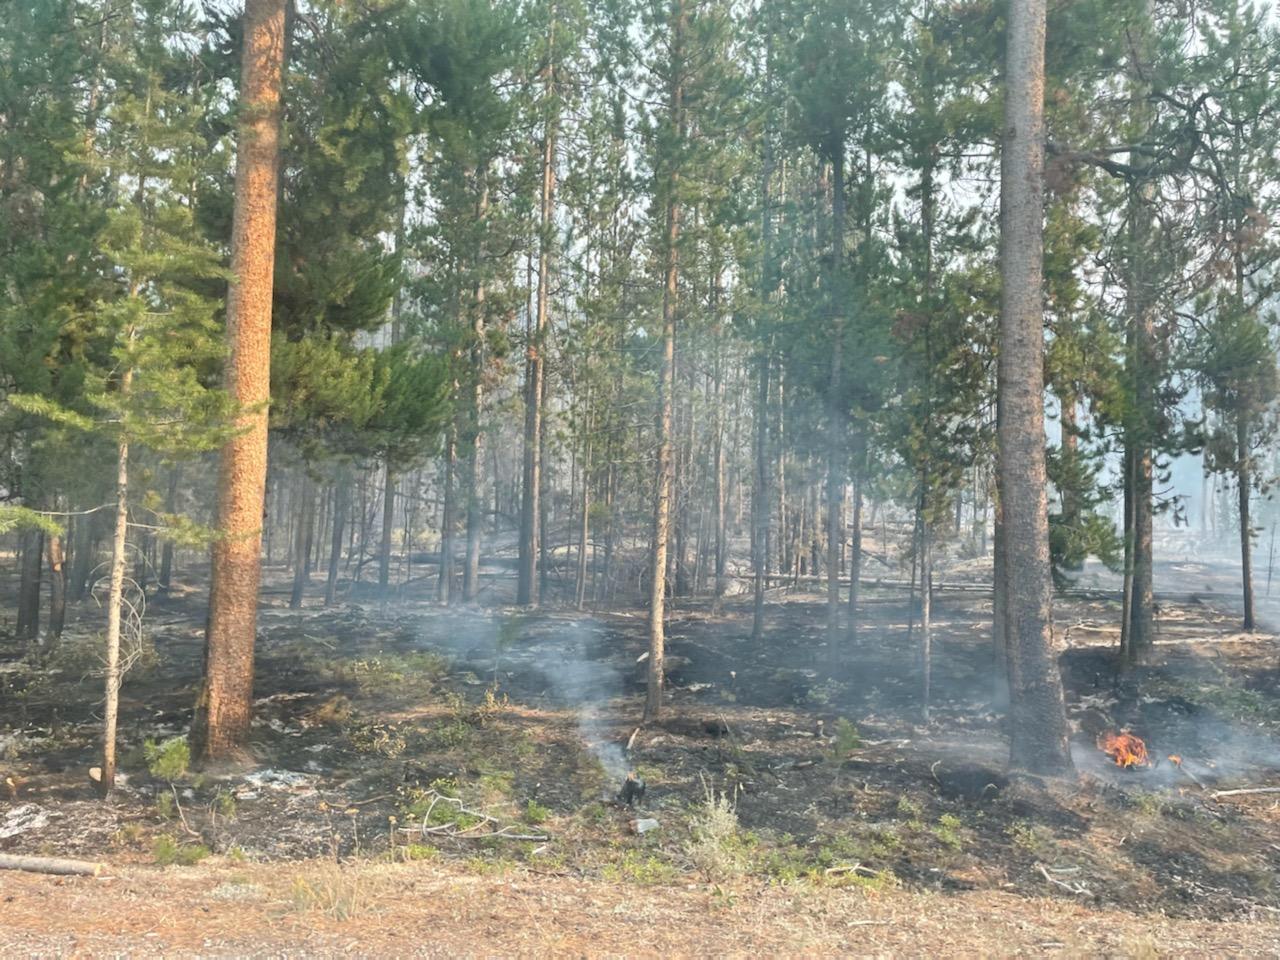 Burned area under trees